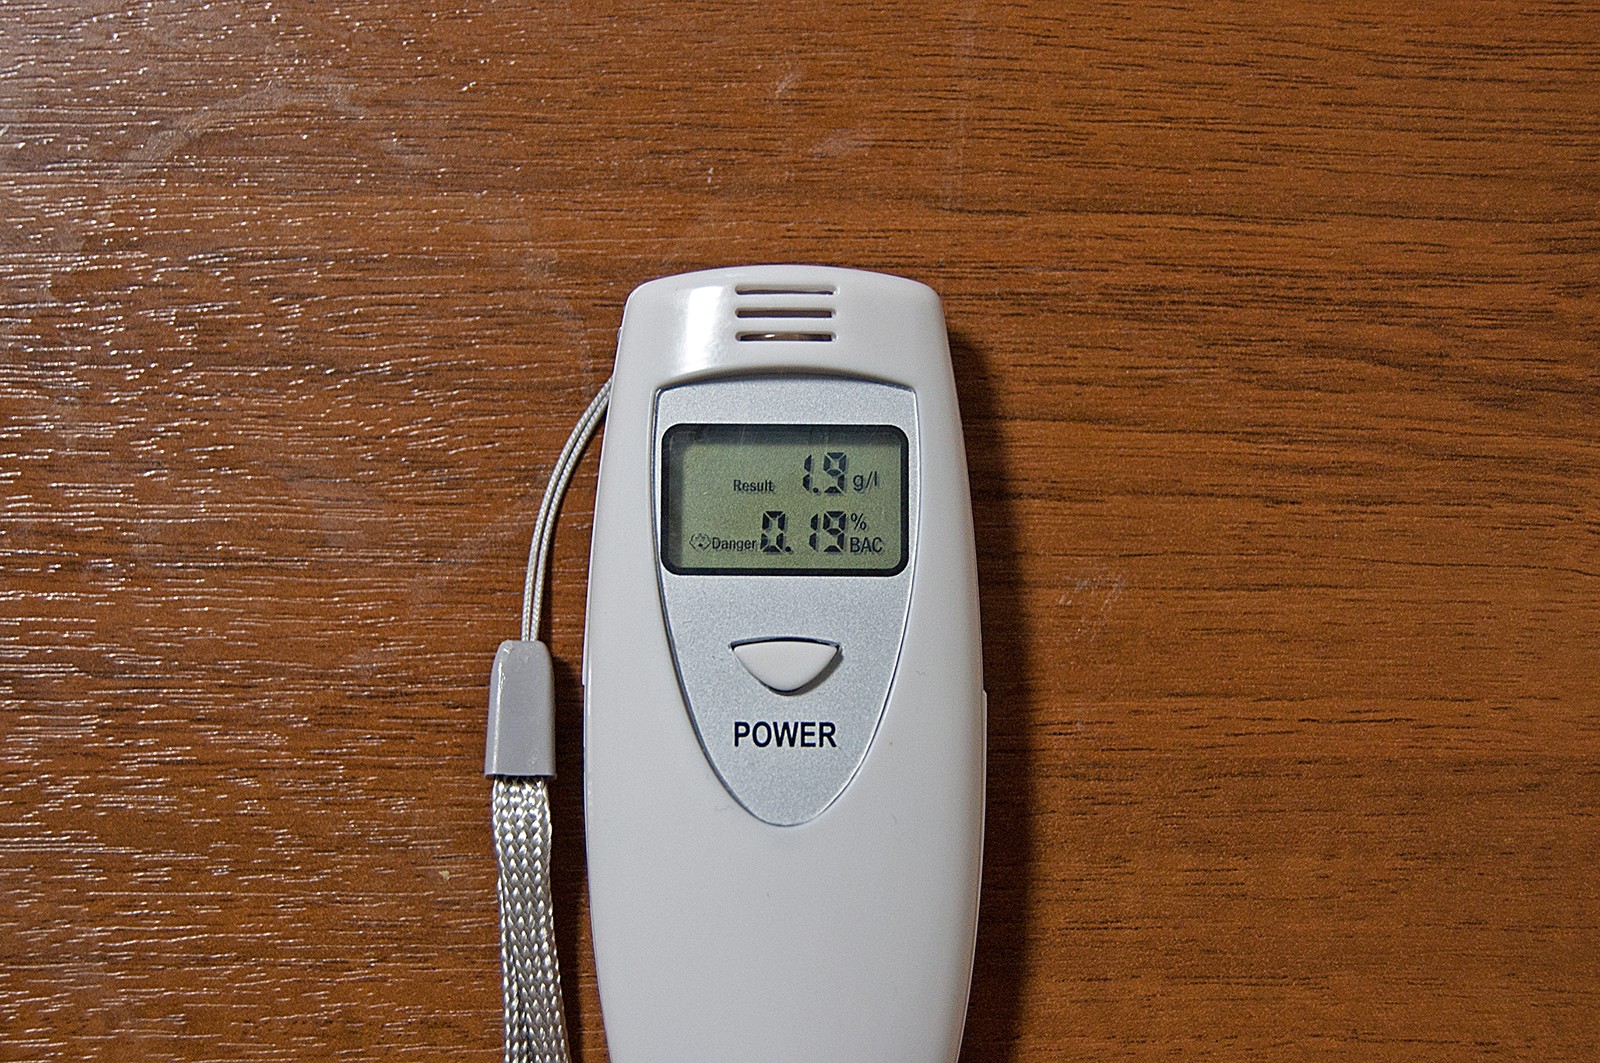 Дышать за 30 тысяч: тестируем дешёвый алкотестер и измеряем скорость вывода алкоголя